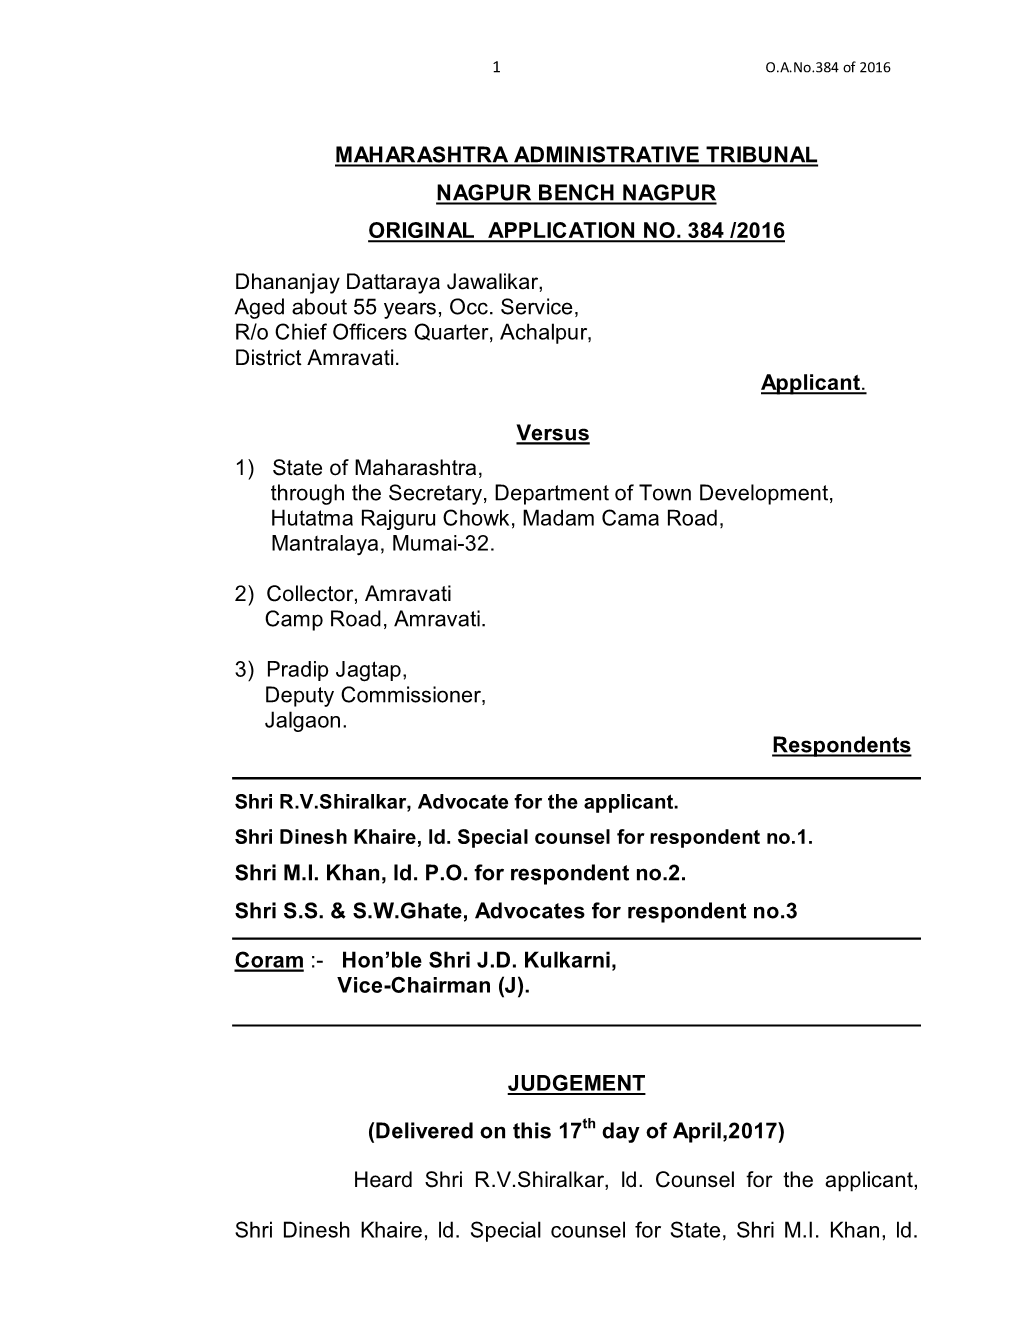 Maharashtra Administrative Tribunal Nagpur Bench Nagpur Original Application No